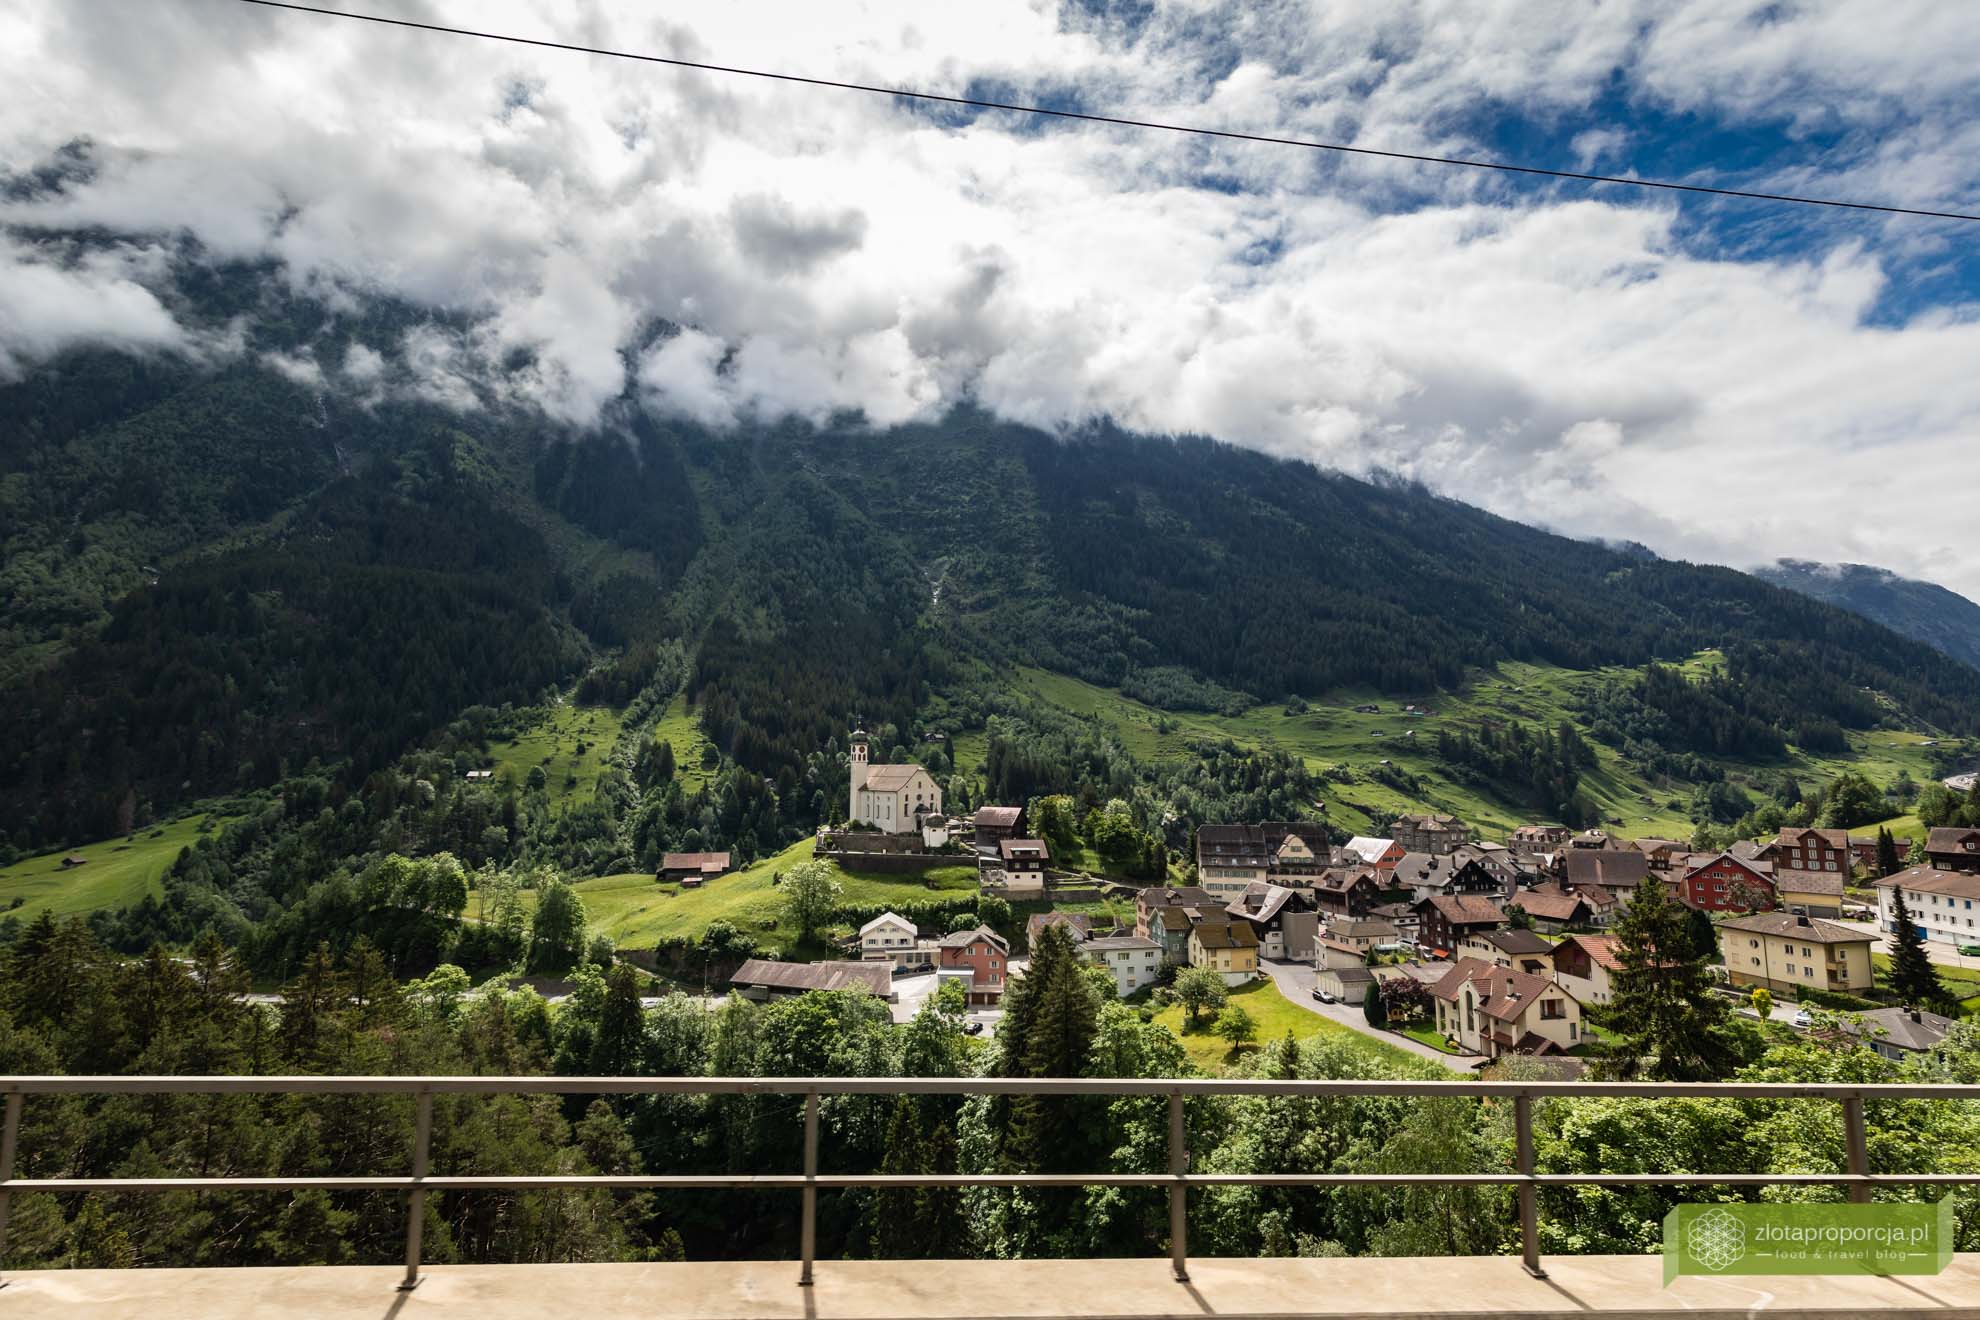 Ekspres Panoramiczny Gotarda; Szwajcaria; Szwajcaria pociągami; pociąg panoramiczny Szwajcaria; Gothard Panorama express; pociąg panoramiczny; Grand Train Tour of Switzerland; najpiękniejsze trasy kolejowe w Szwajcarii; Jezioro Czterech Kantonów; okolice Lucerny; 